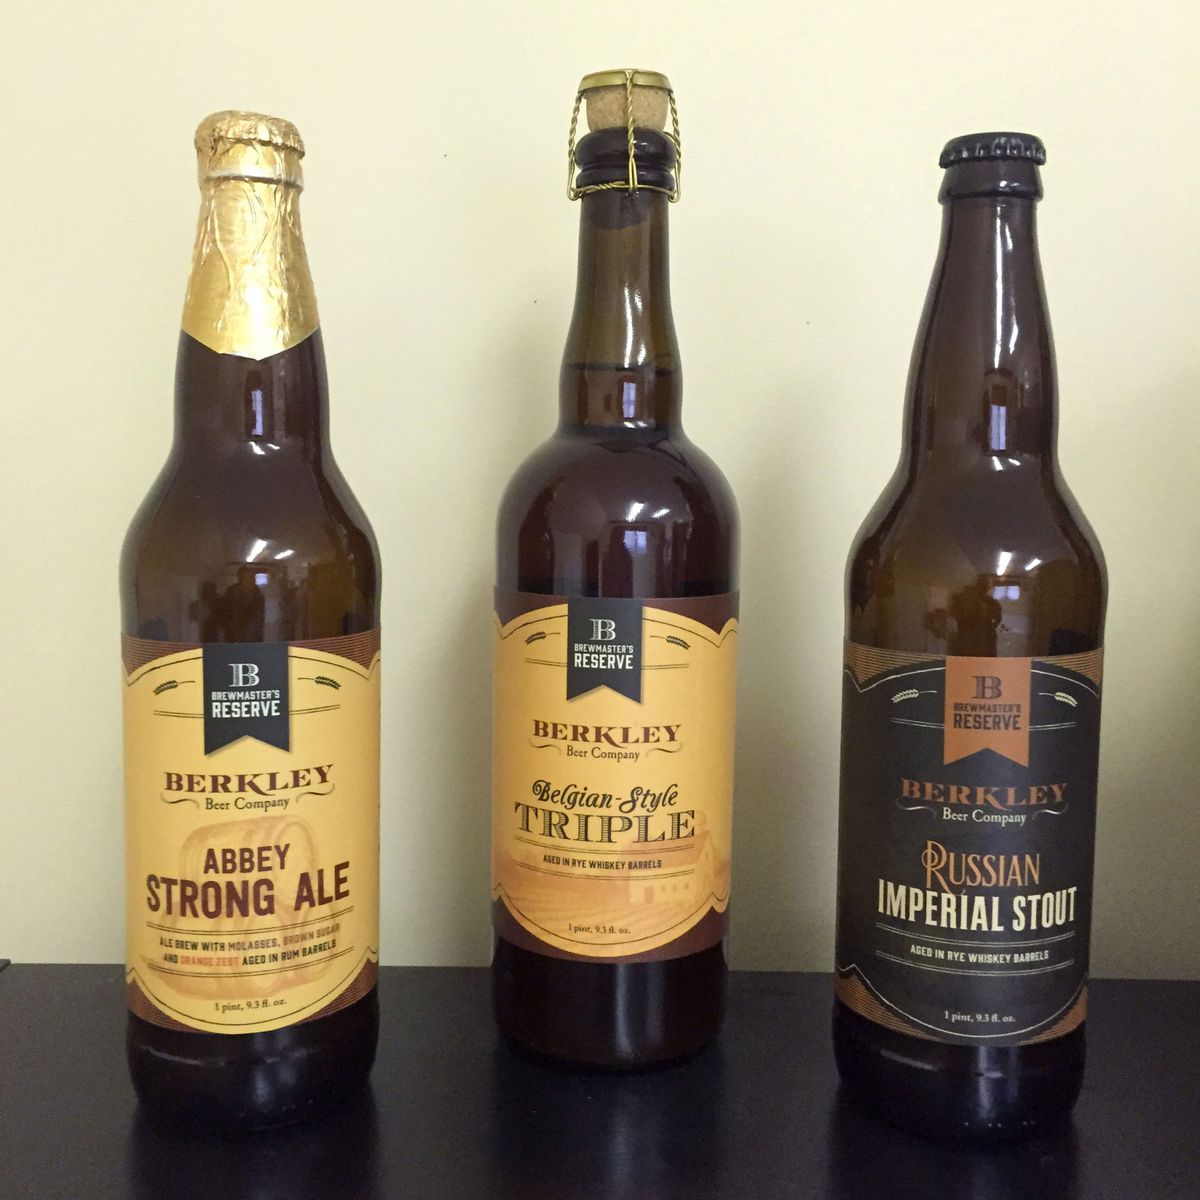 Massachusetts: Berkley Beer Company